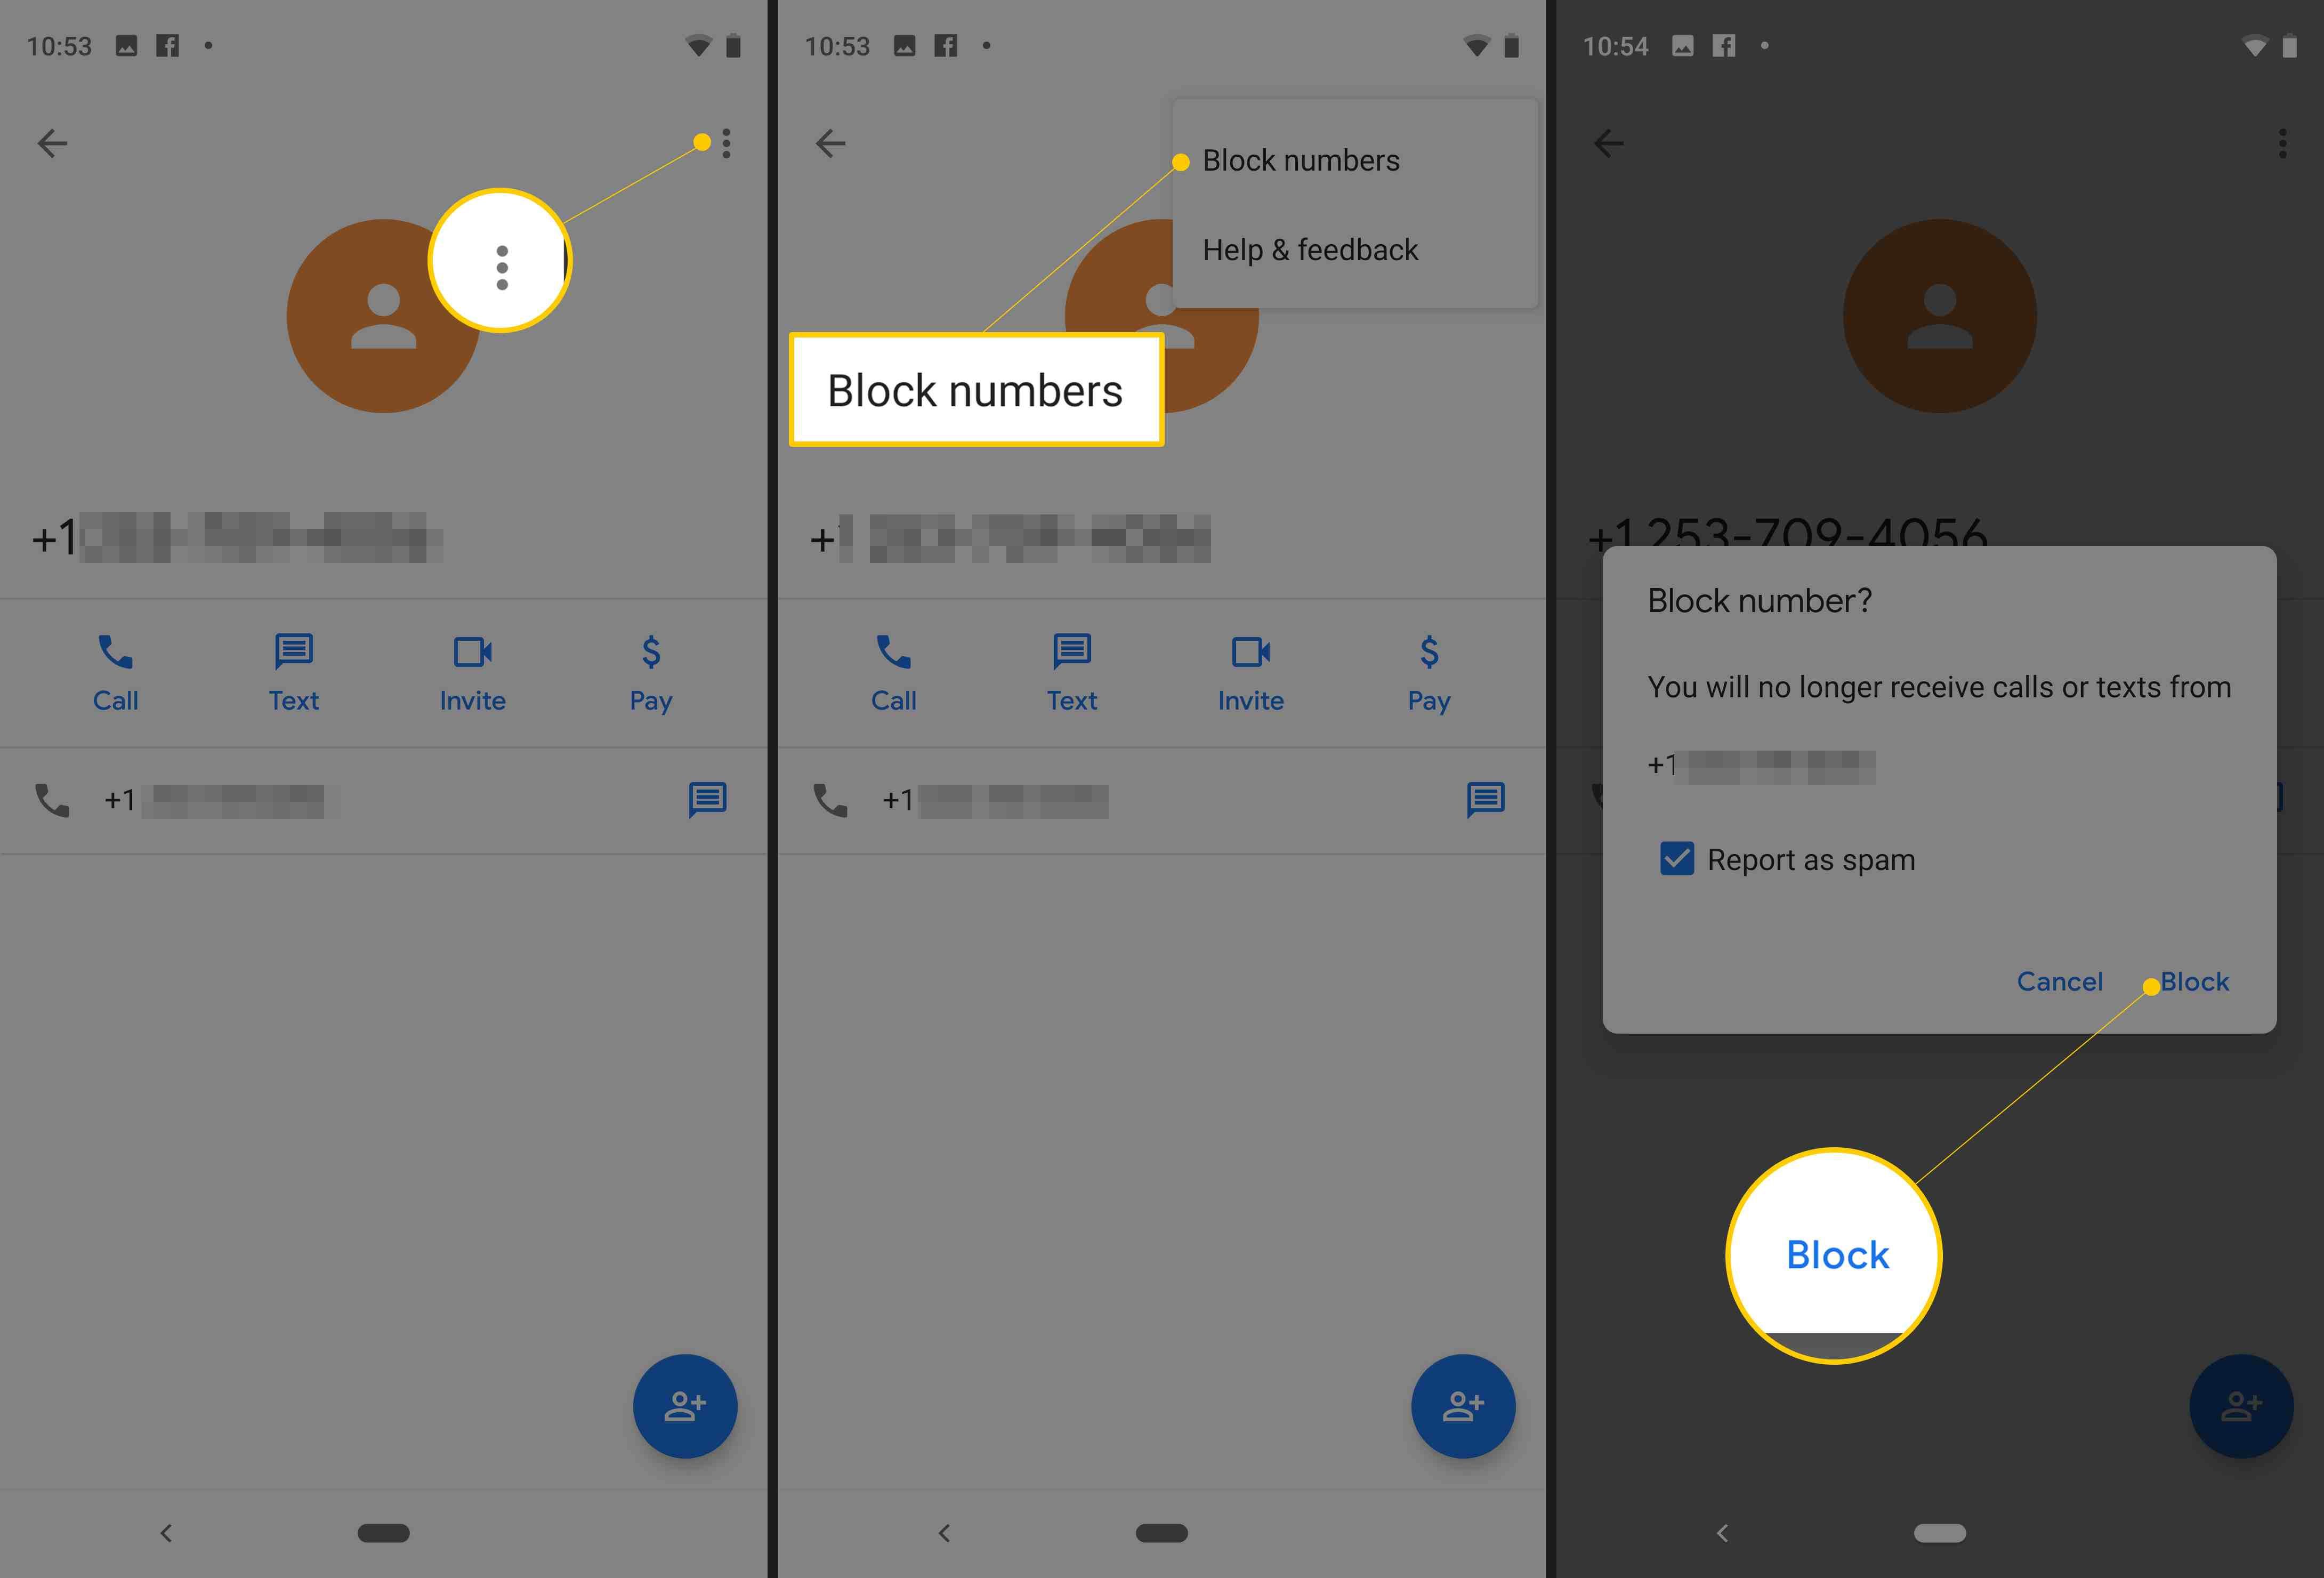 Три экрана Android от Pixel, показывающие вертикальное меню точек, пункт меню номеров блоков и кнопку блокировки